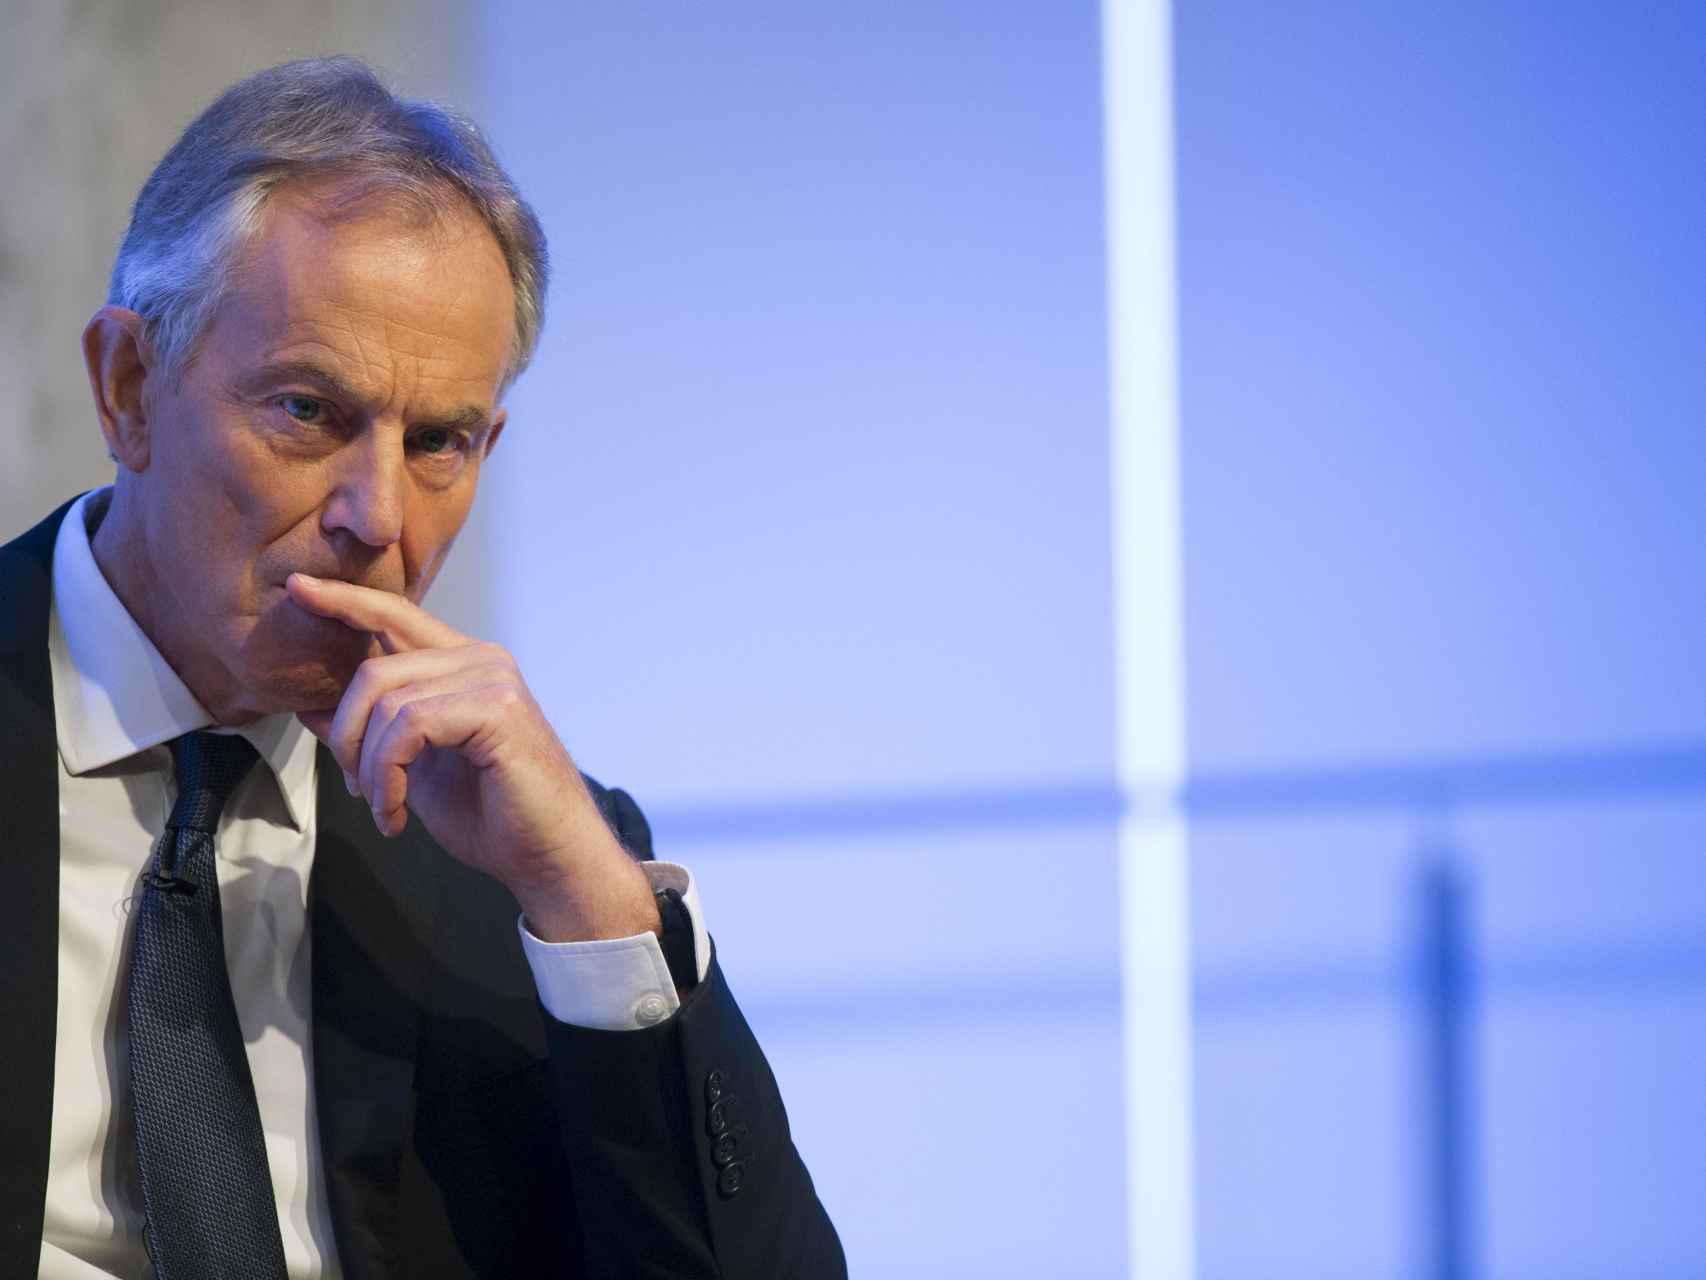 Blair mantuvo un contrato secreto con PetroSaudi mientras era enviado especial en Oriente Medio